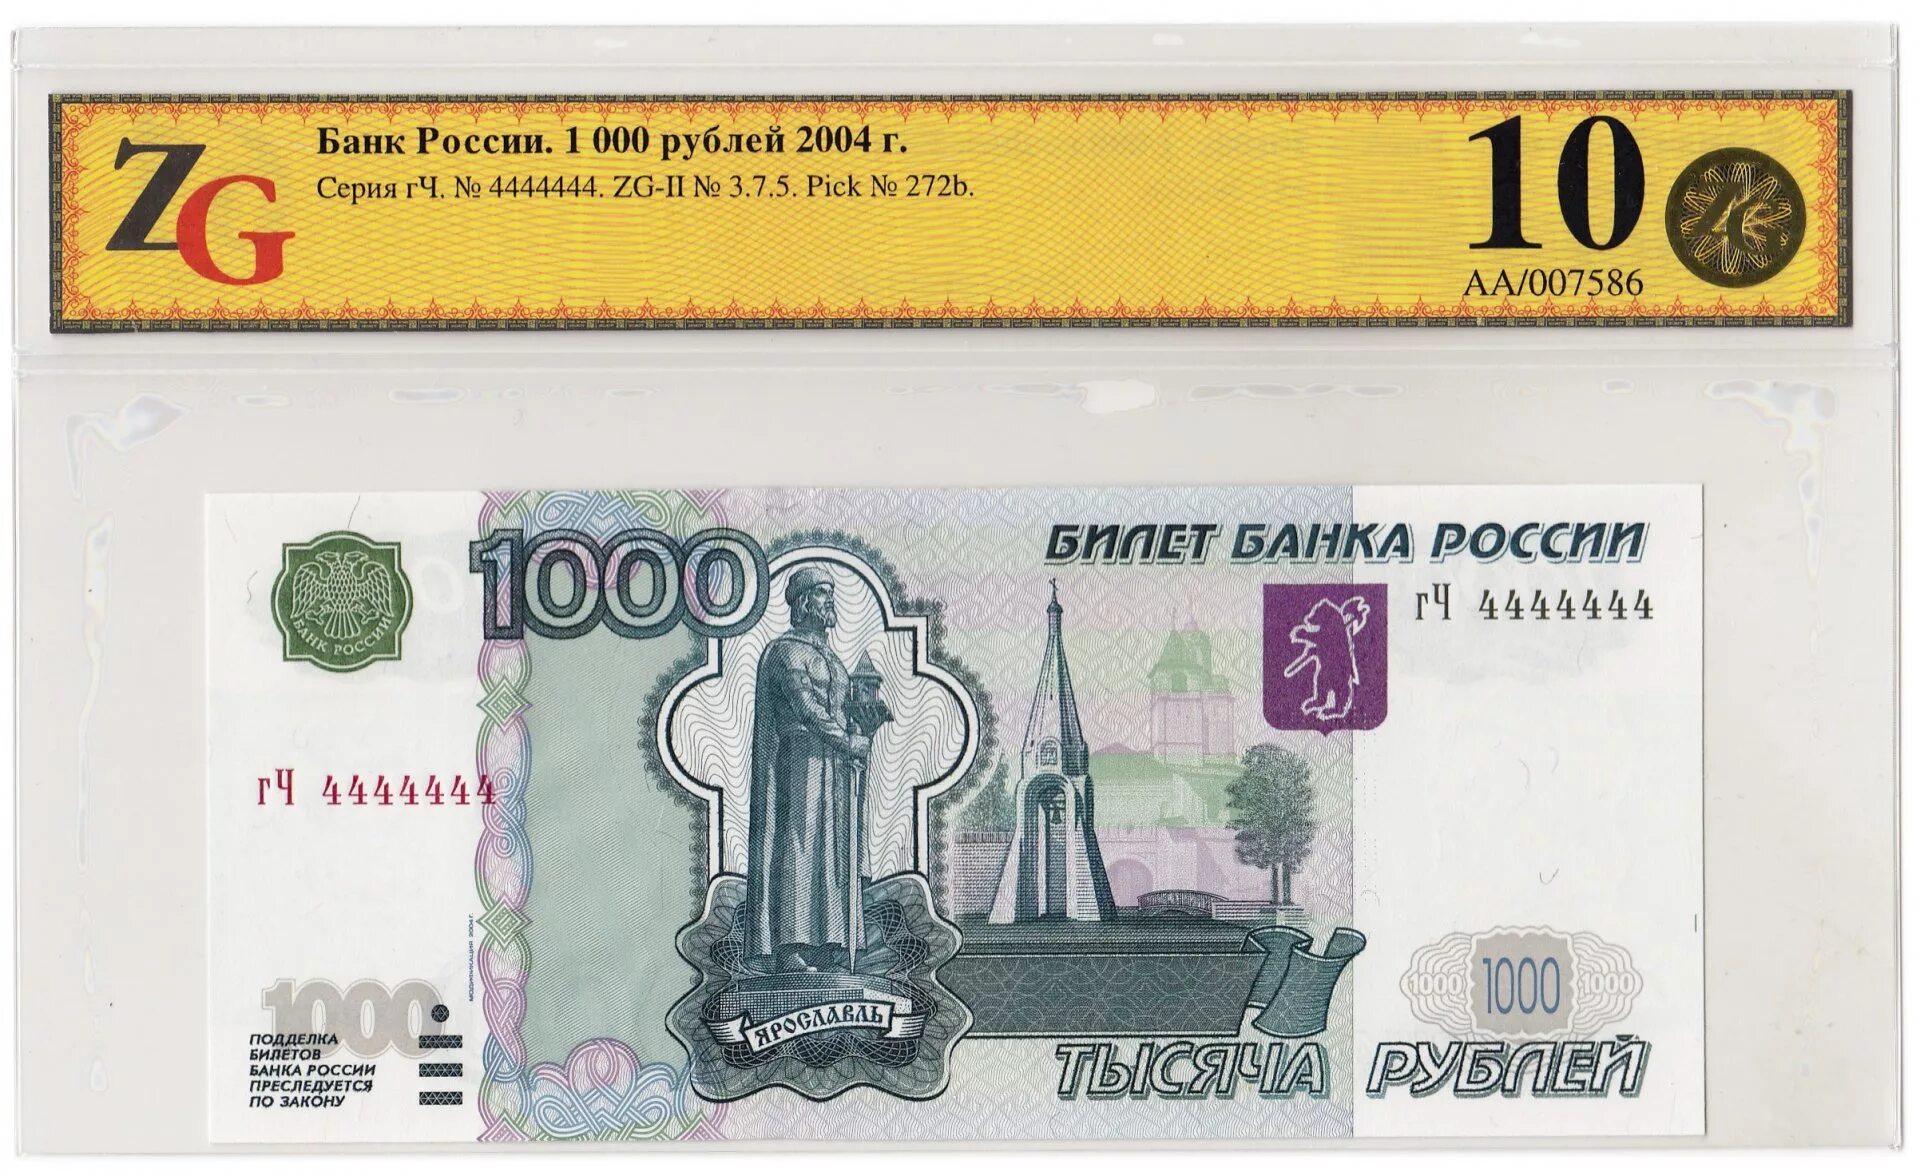 1000 Рублей 1997 (модификация 2004 года) UNC. 1000 Рублей модификации модифицированная 1997 года. Банкнота 1000 рублей. Билет банка России 1000 рублей. Доллары в рубли 2004